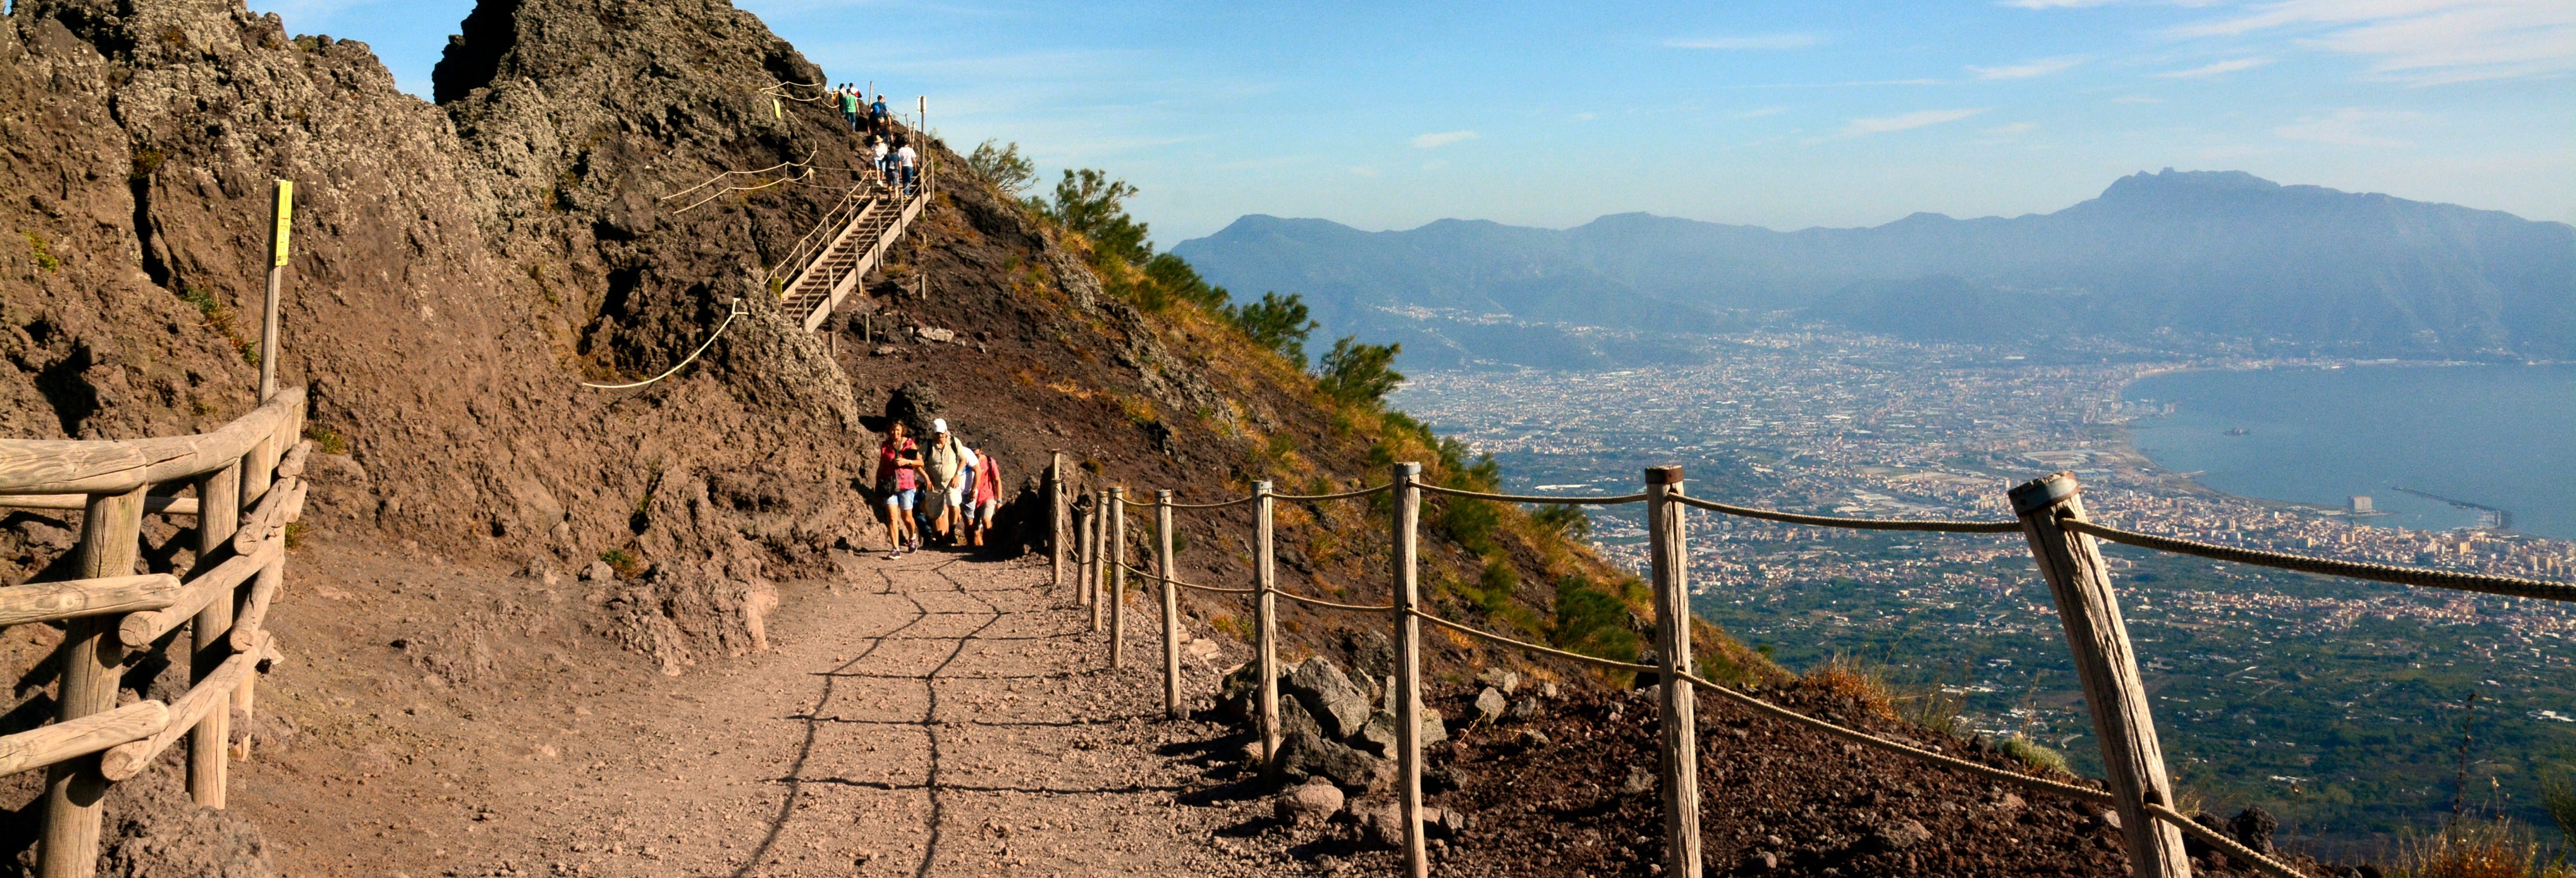 Trekking sul Vesuvio da Agerola